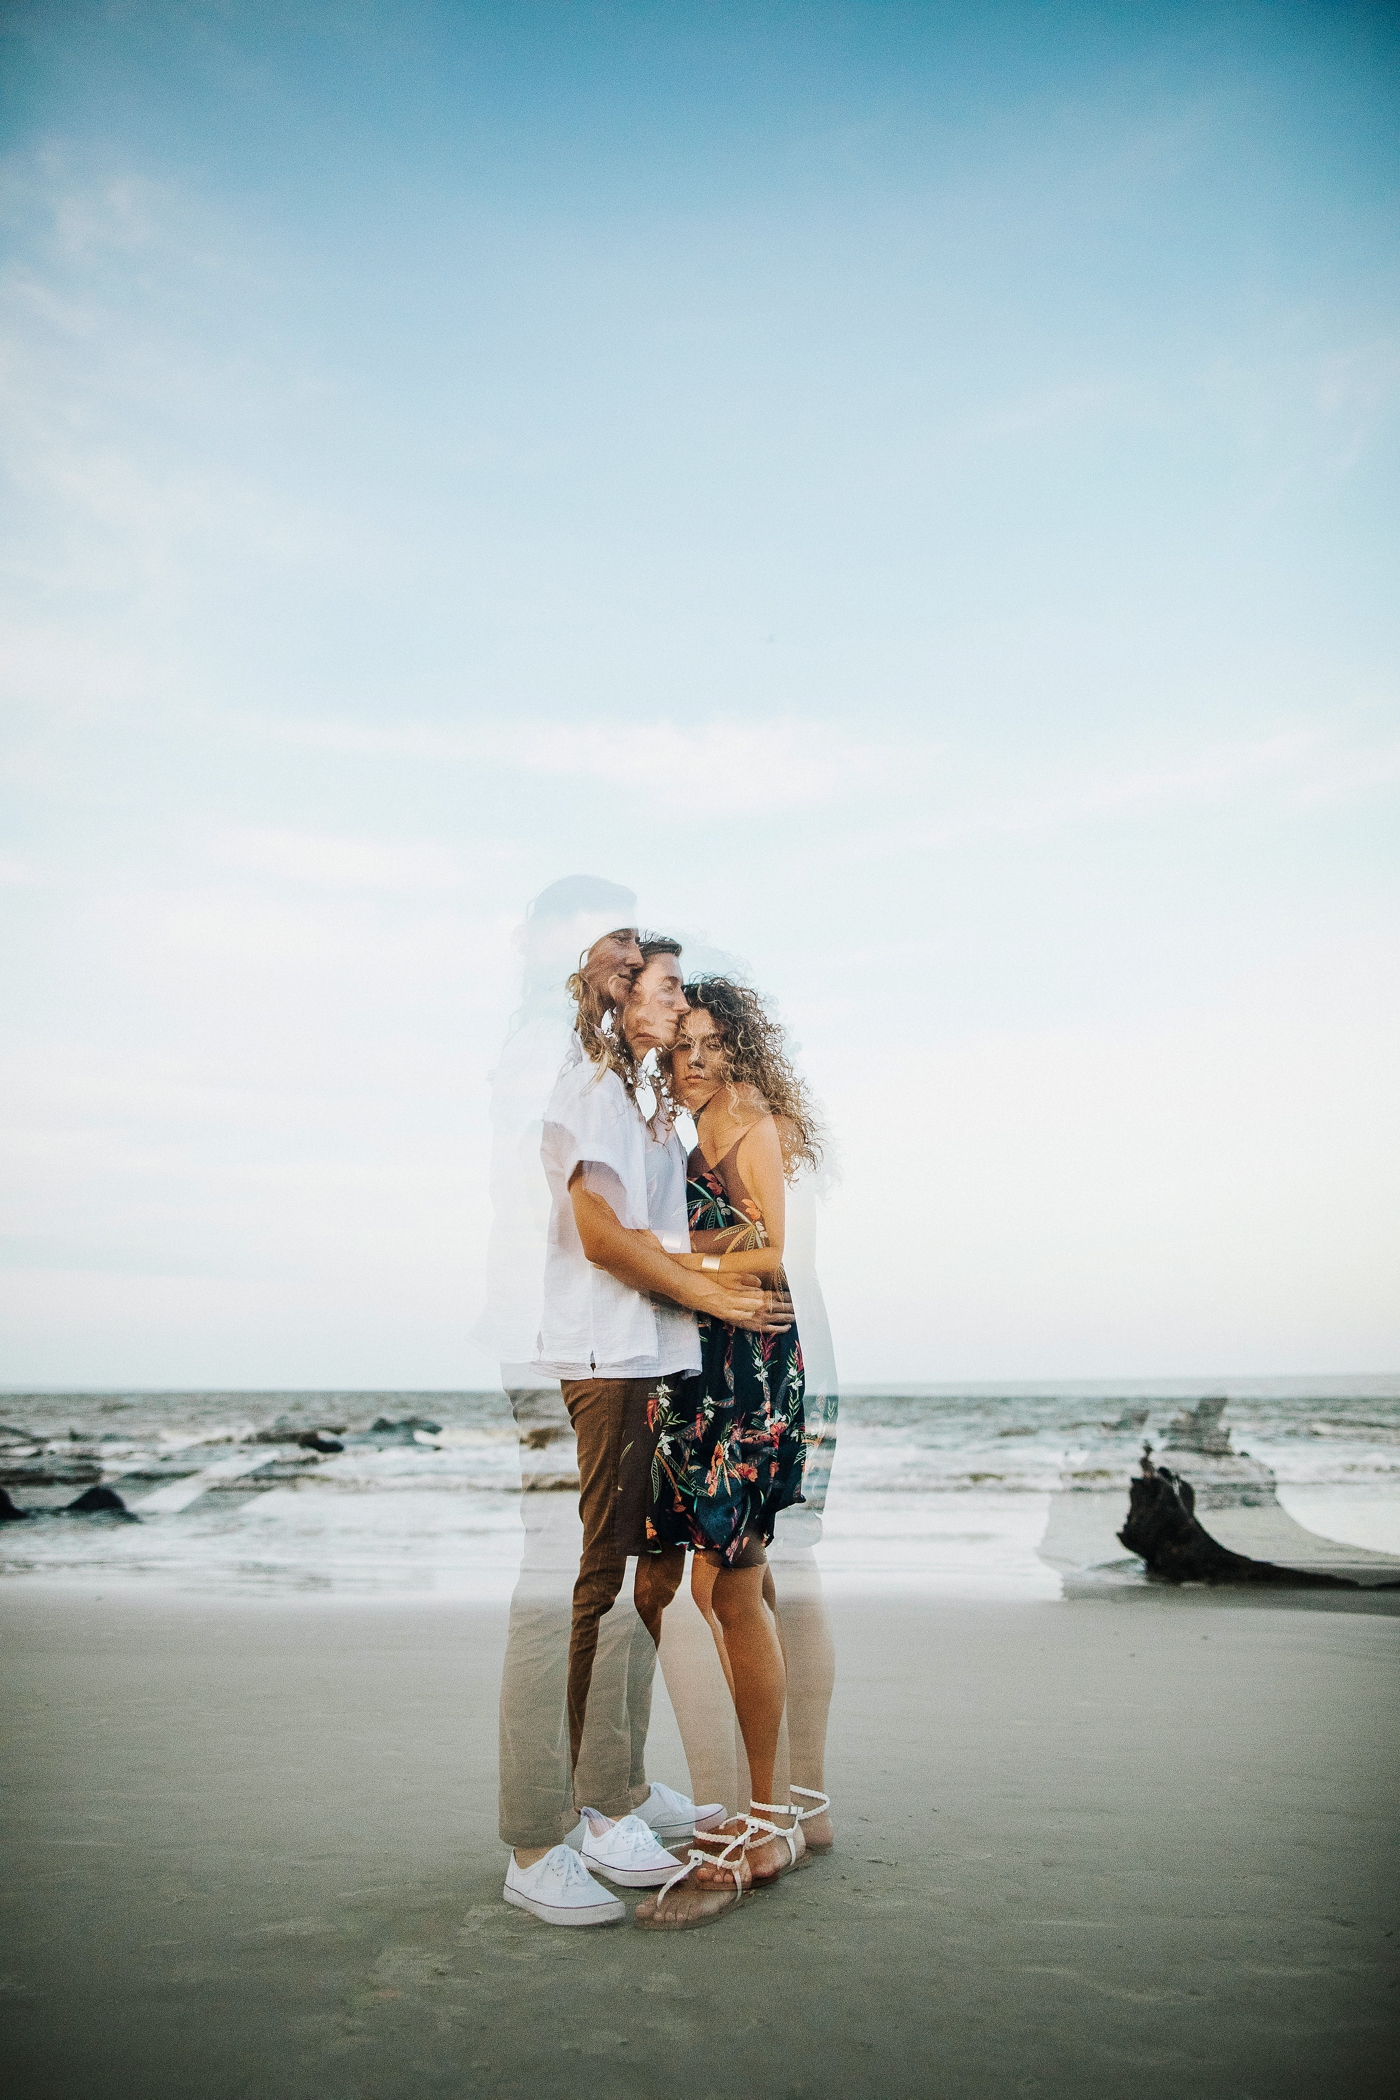 Caitlin & Hannah beach sunset couple shoot | Izzy and Co.